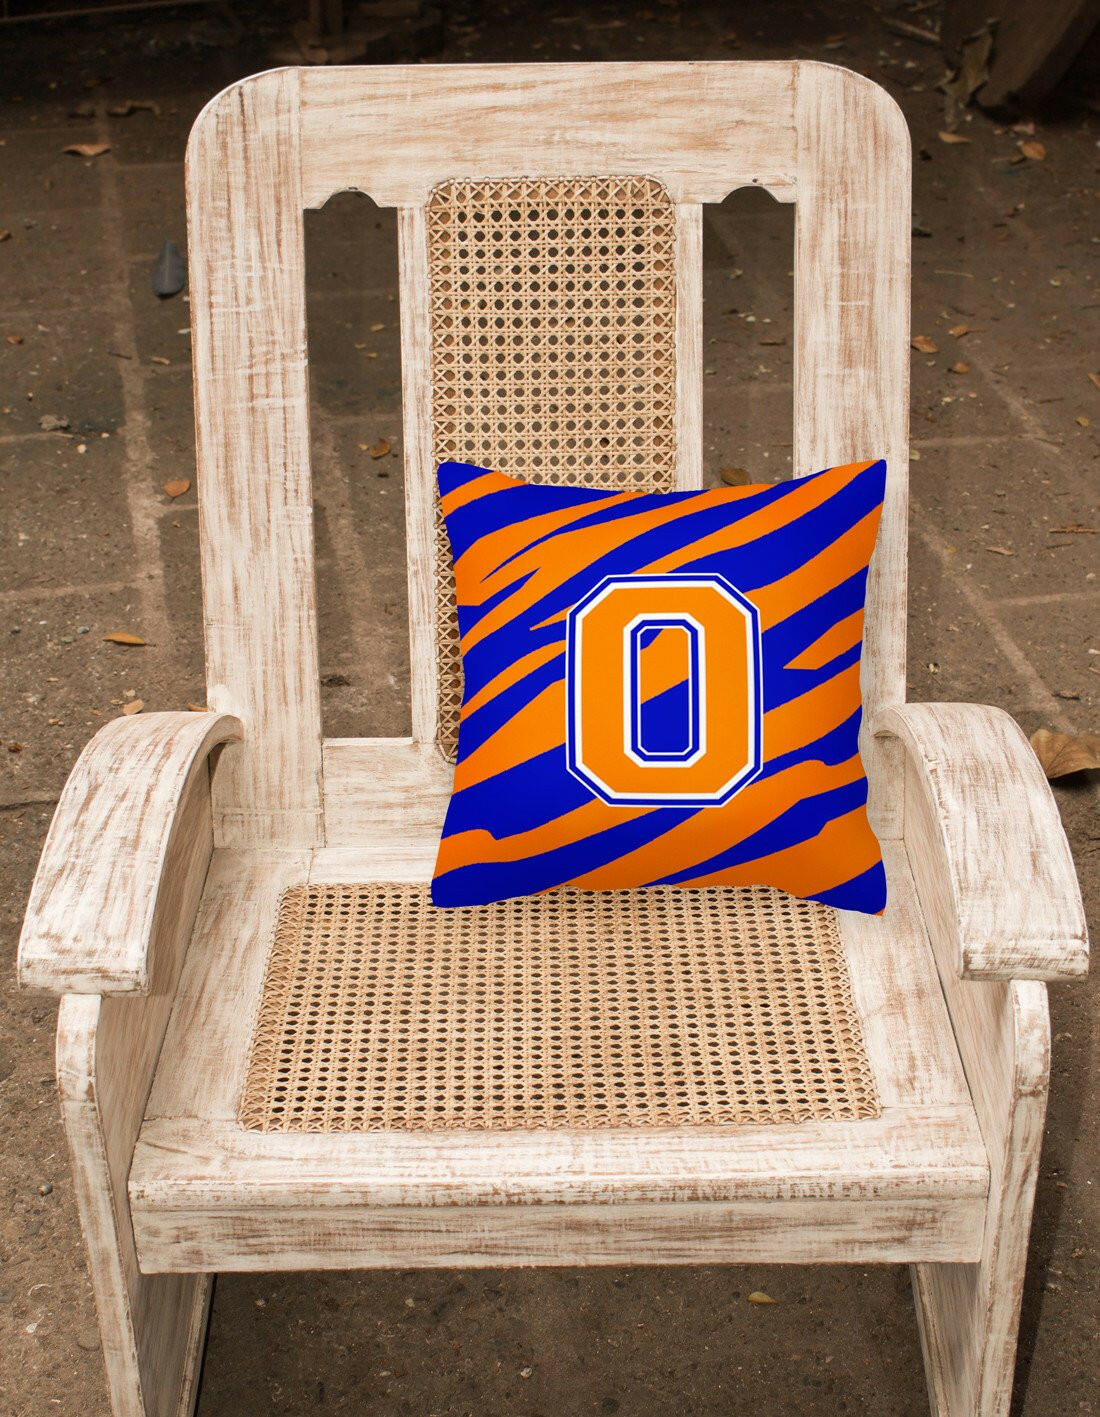 Monogram Initial O Tiger Stripe - Blue Orange Decorative   Canvas Fabric Pillow - the-store.com